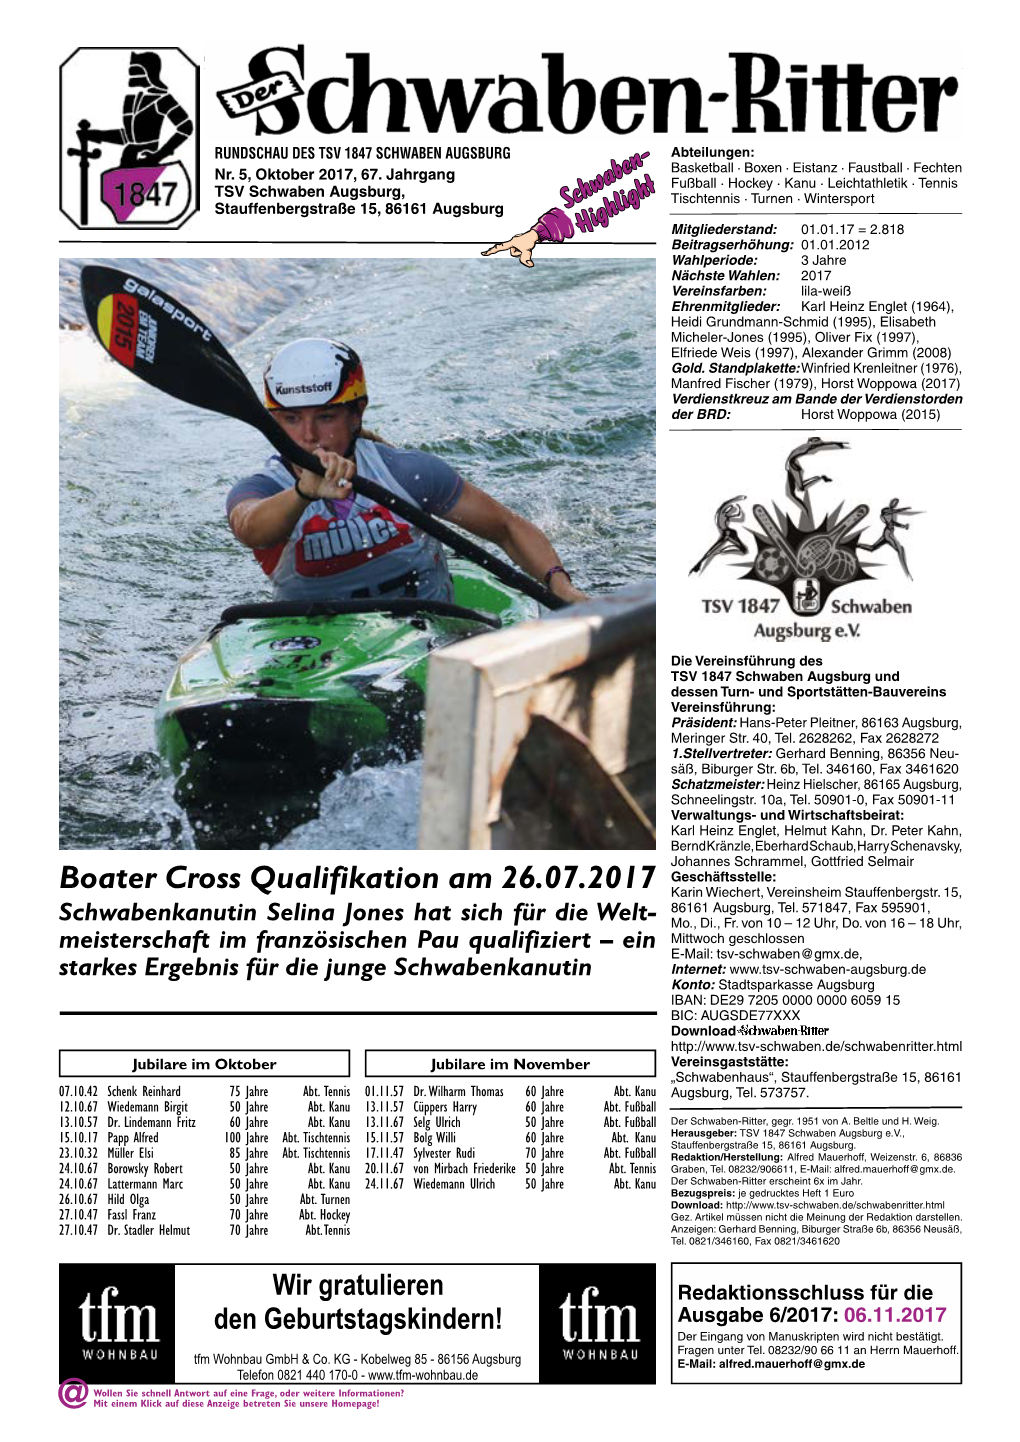 Boater Cross Qualifikation Am 26.07.2017 Karin Wiechert, Vereinsheim Stauffenbergstr